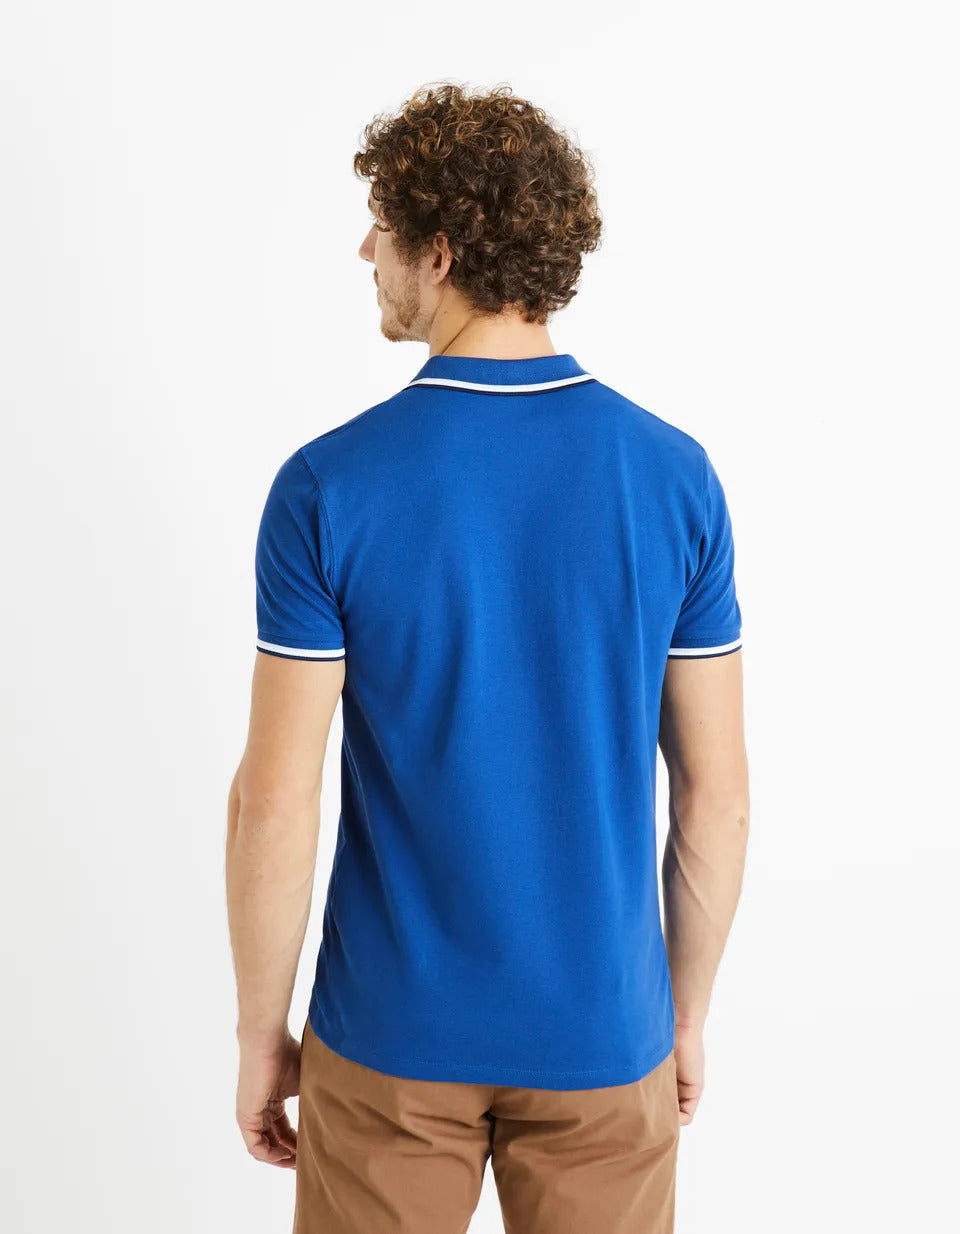 Cotton Elastane Piqué Polo Shirt - Sky Blue - 02